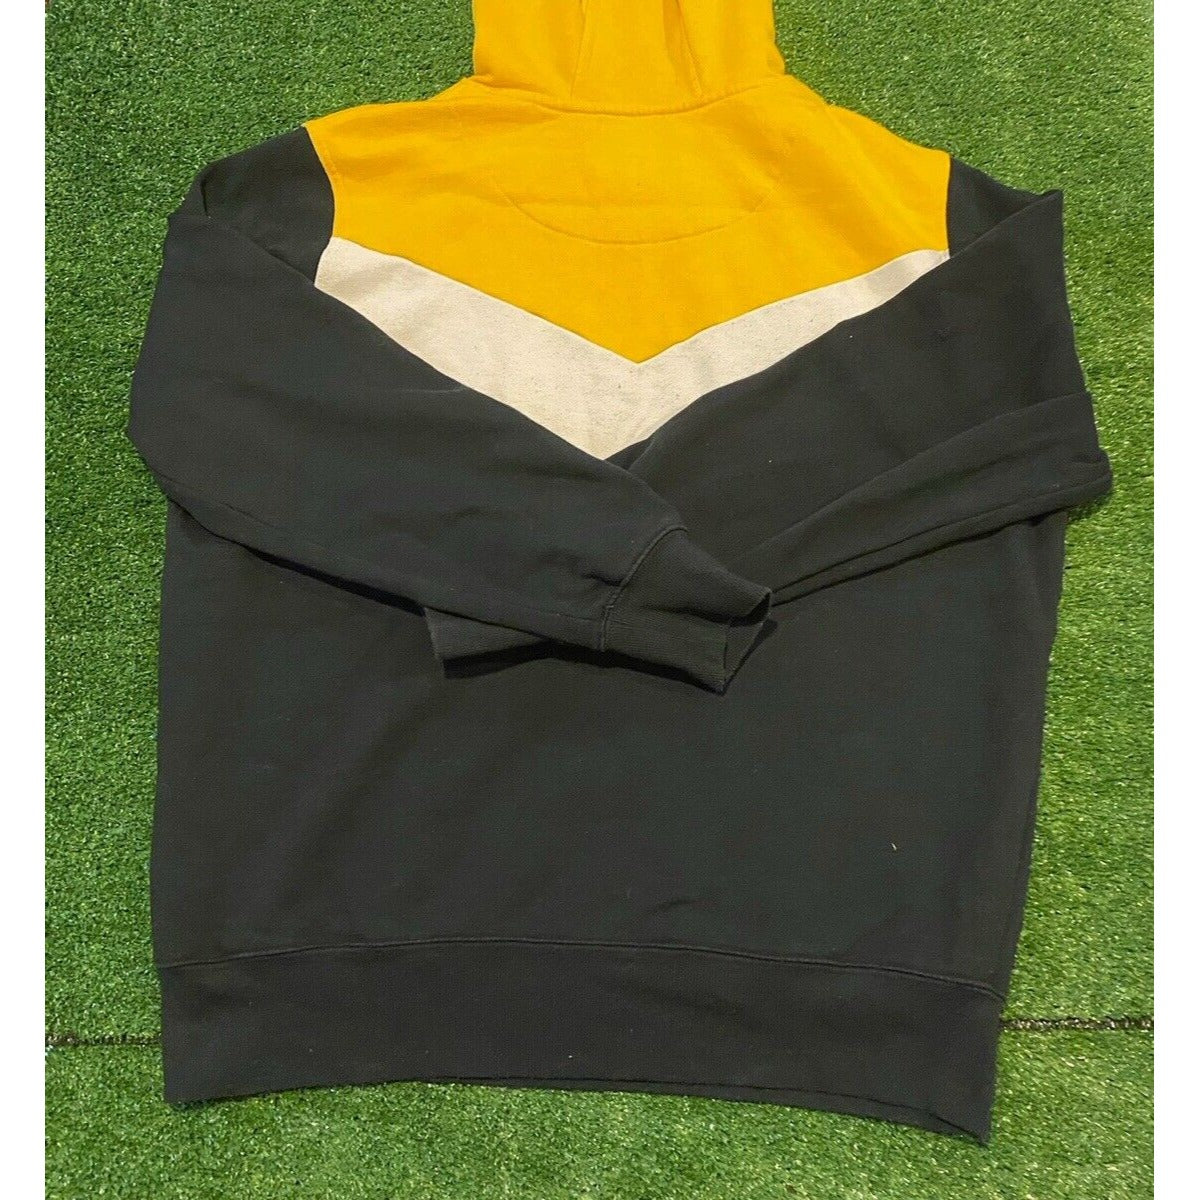 Vintage Pittsburgh Steelers hoodie sweatshirt extra large Starter adult 90s